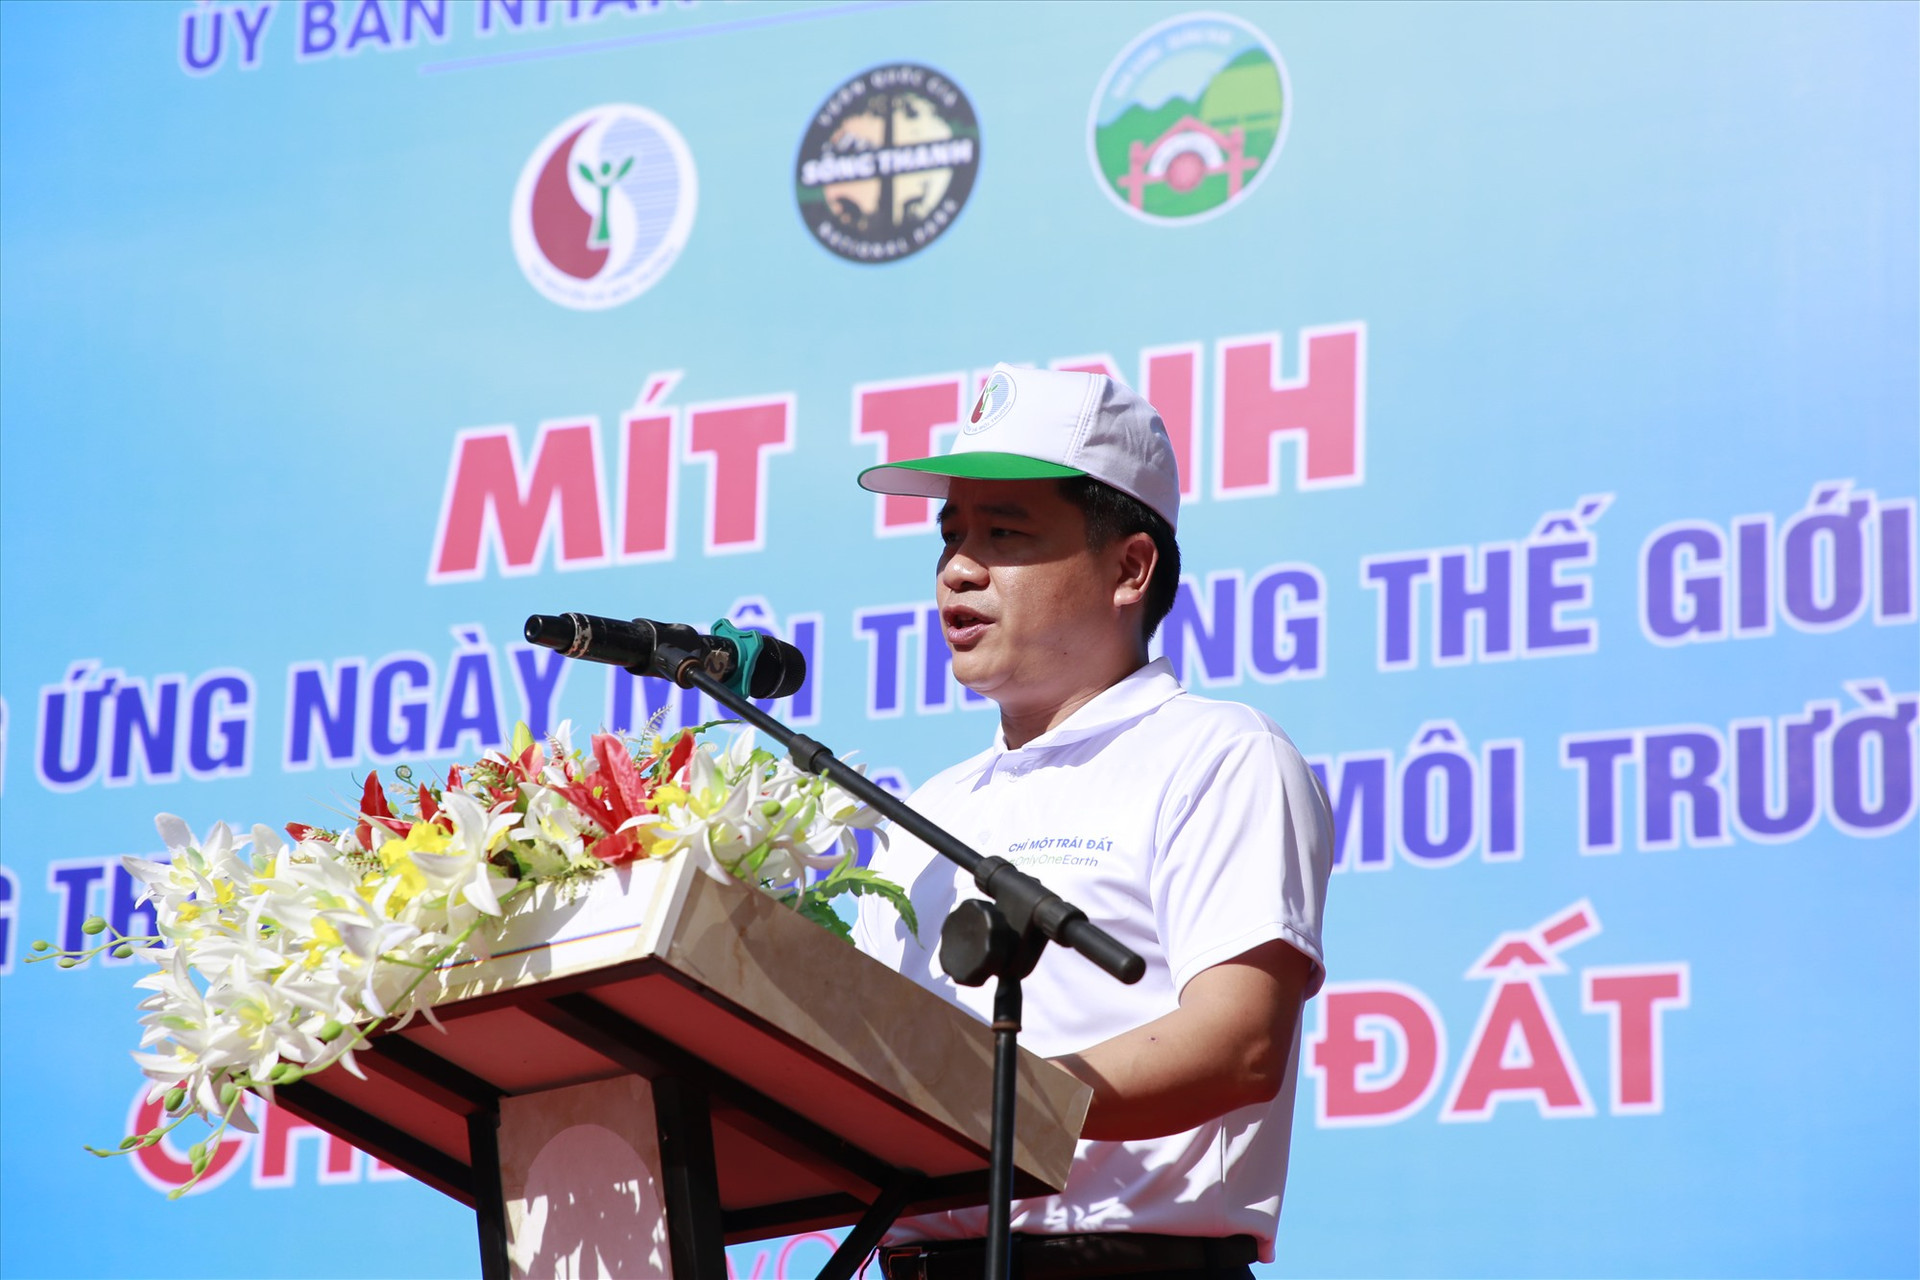 Phó Chủ tịch UBND tỉnh Trần Văn Tân phát biểu tại buổi lễ. Ảnh: T.C